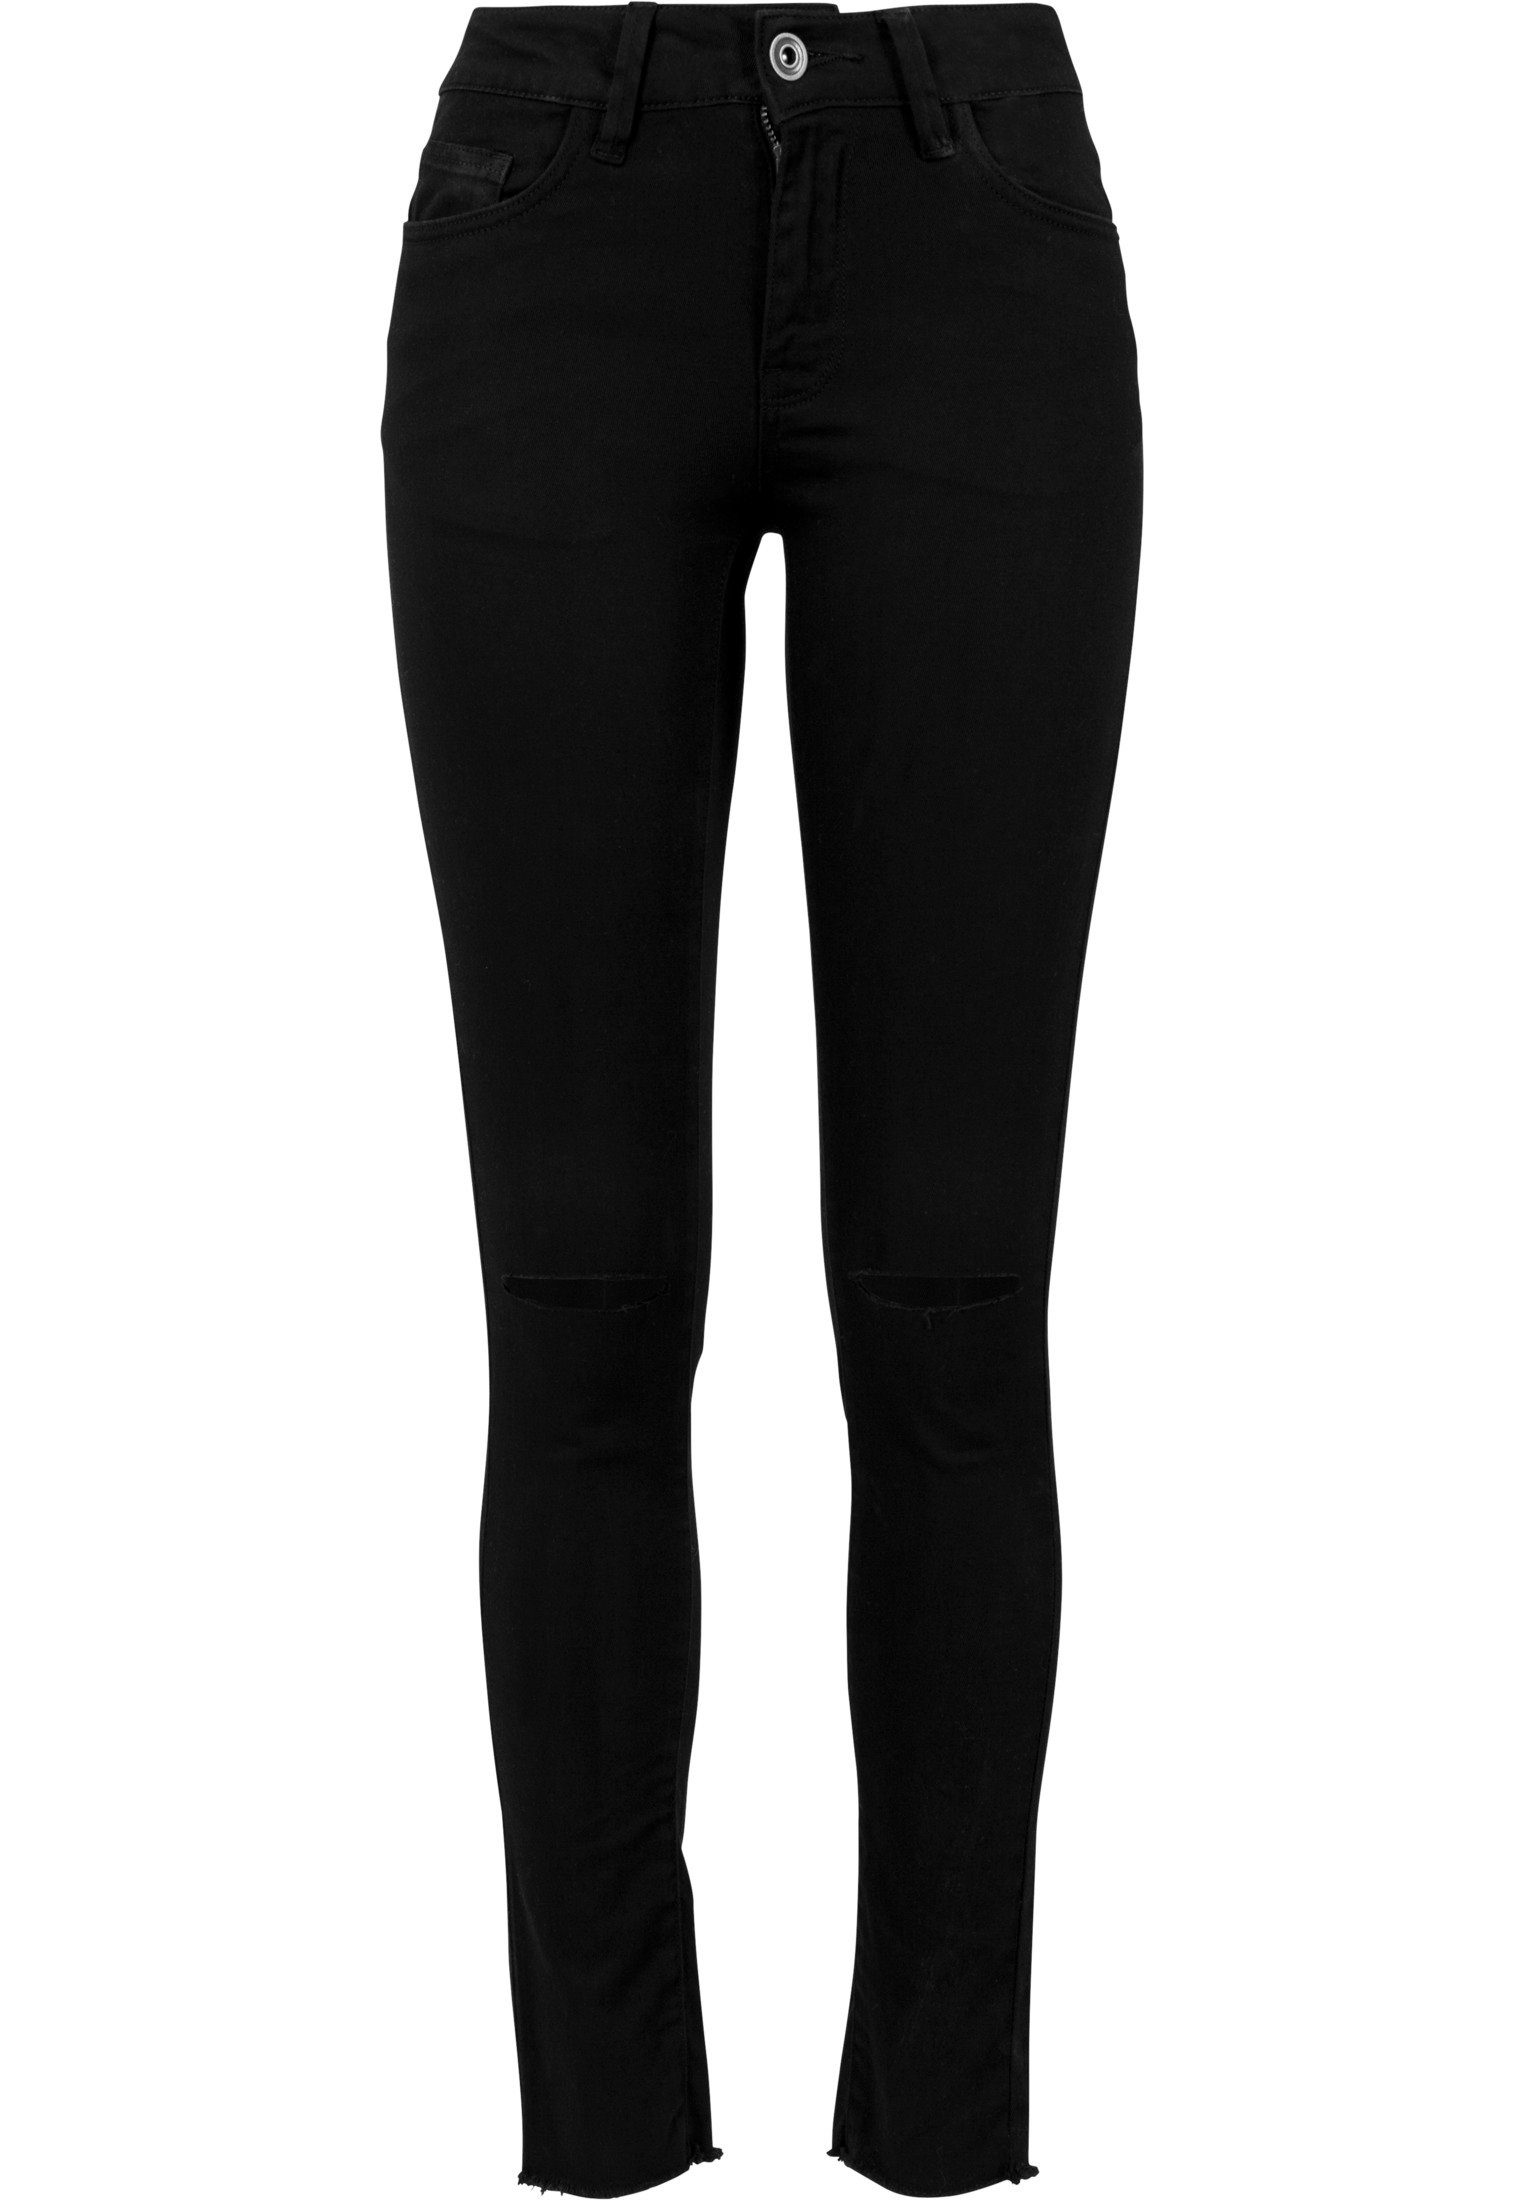 URBAN CLASSICS Skinny-fit-Jeans TB1538 black Knee Cut